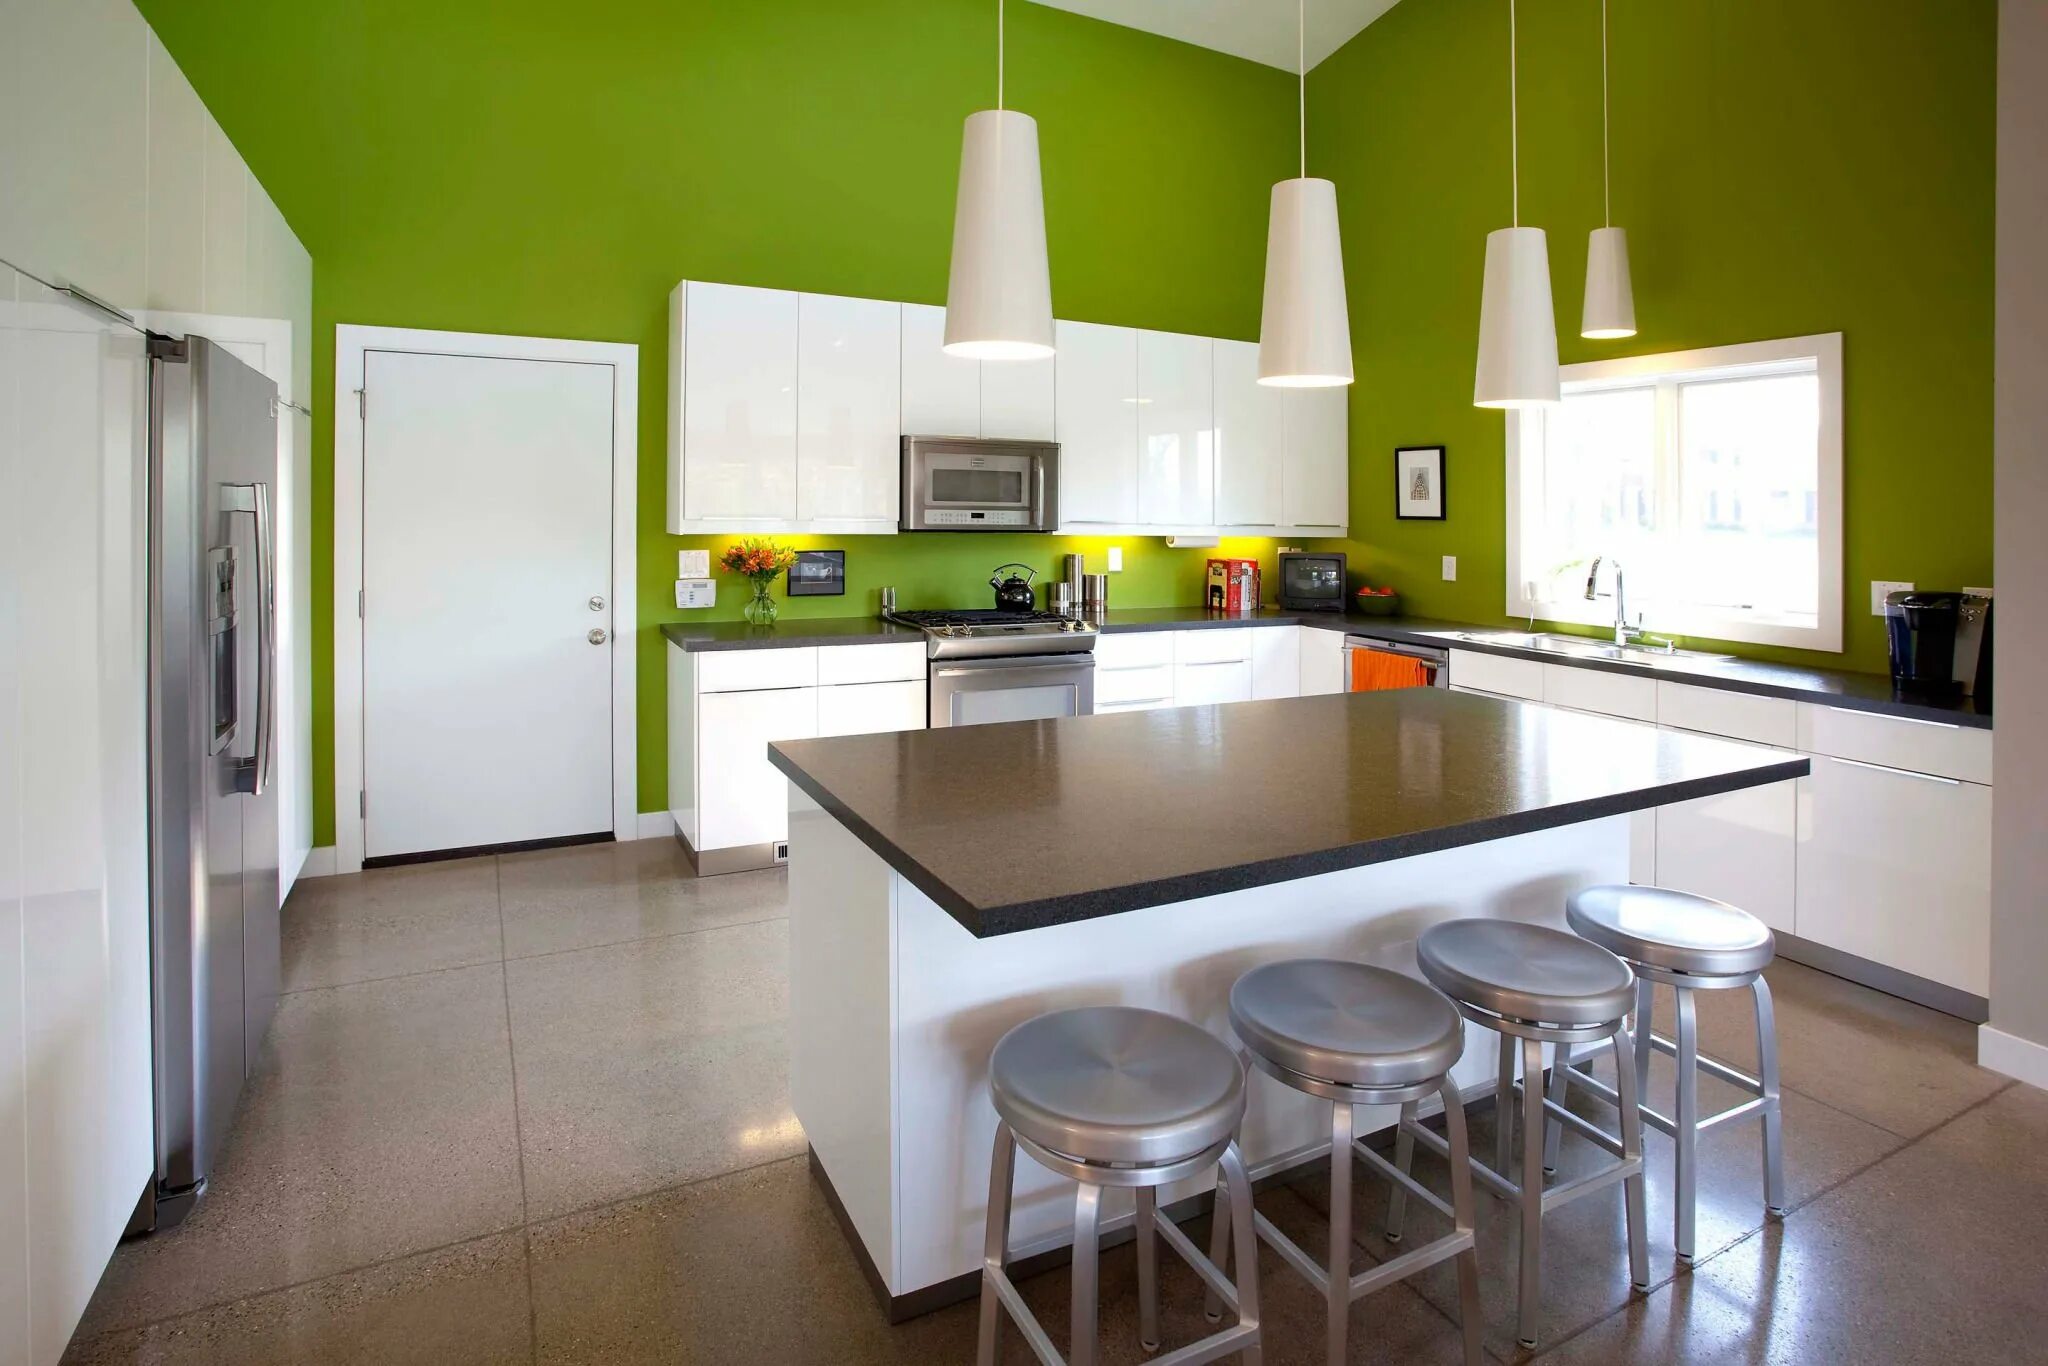 Картинки комнаты кухня. Кухня с зелеными стенами. Белая кухня зеленые стены. Салатовые стены на кухне. Комната кухня.